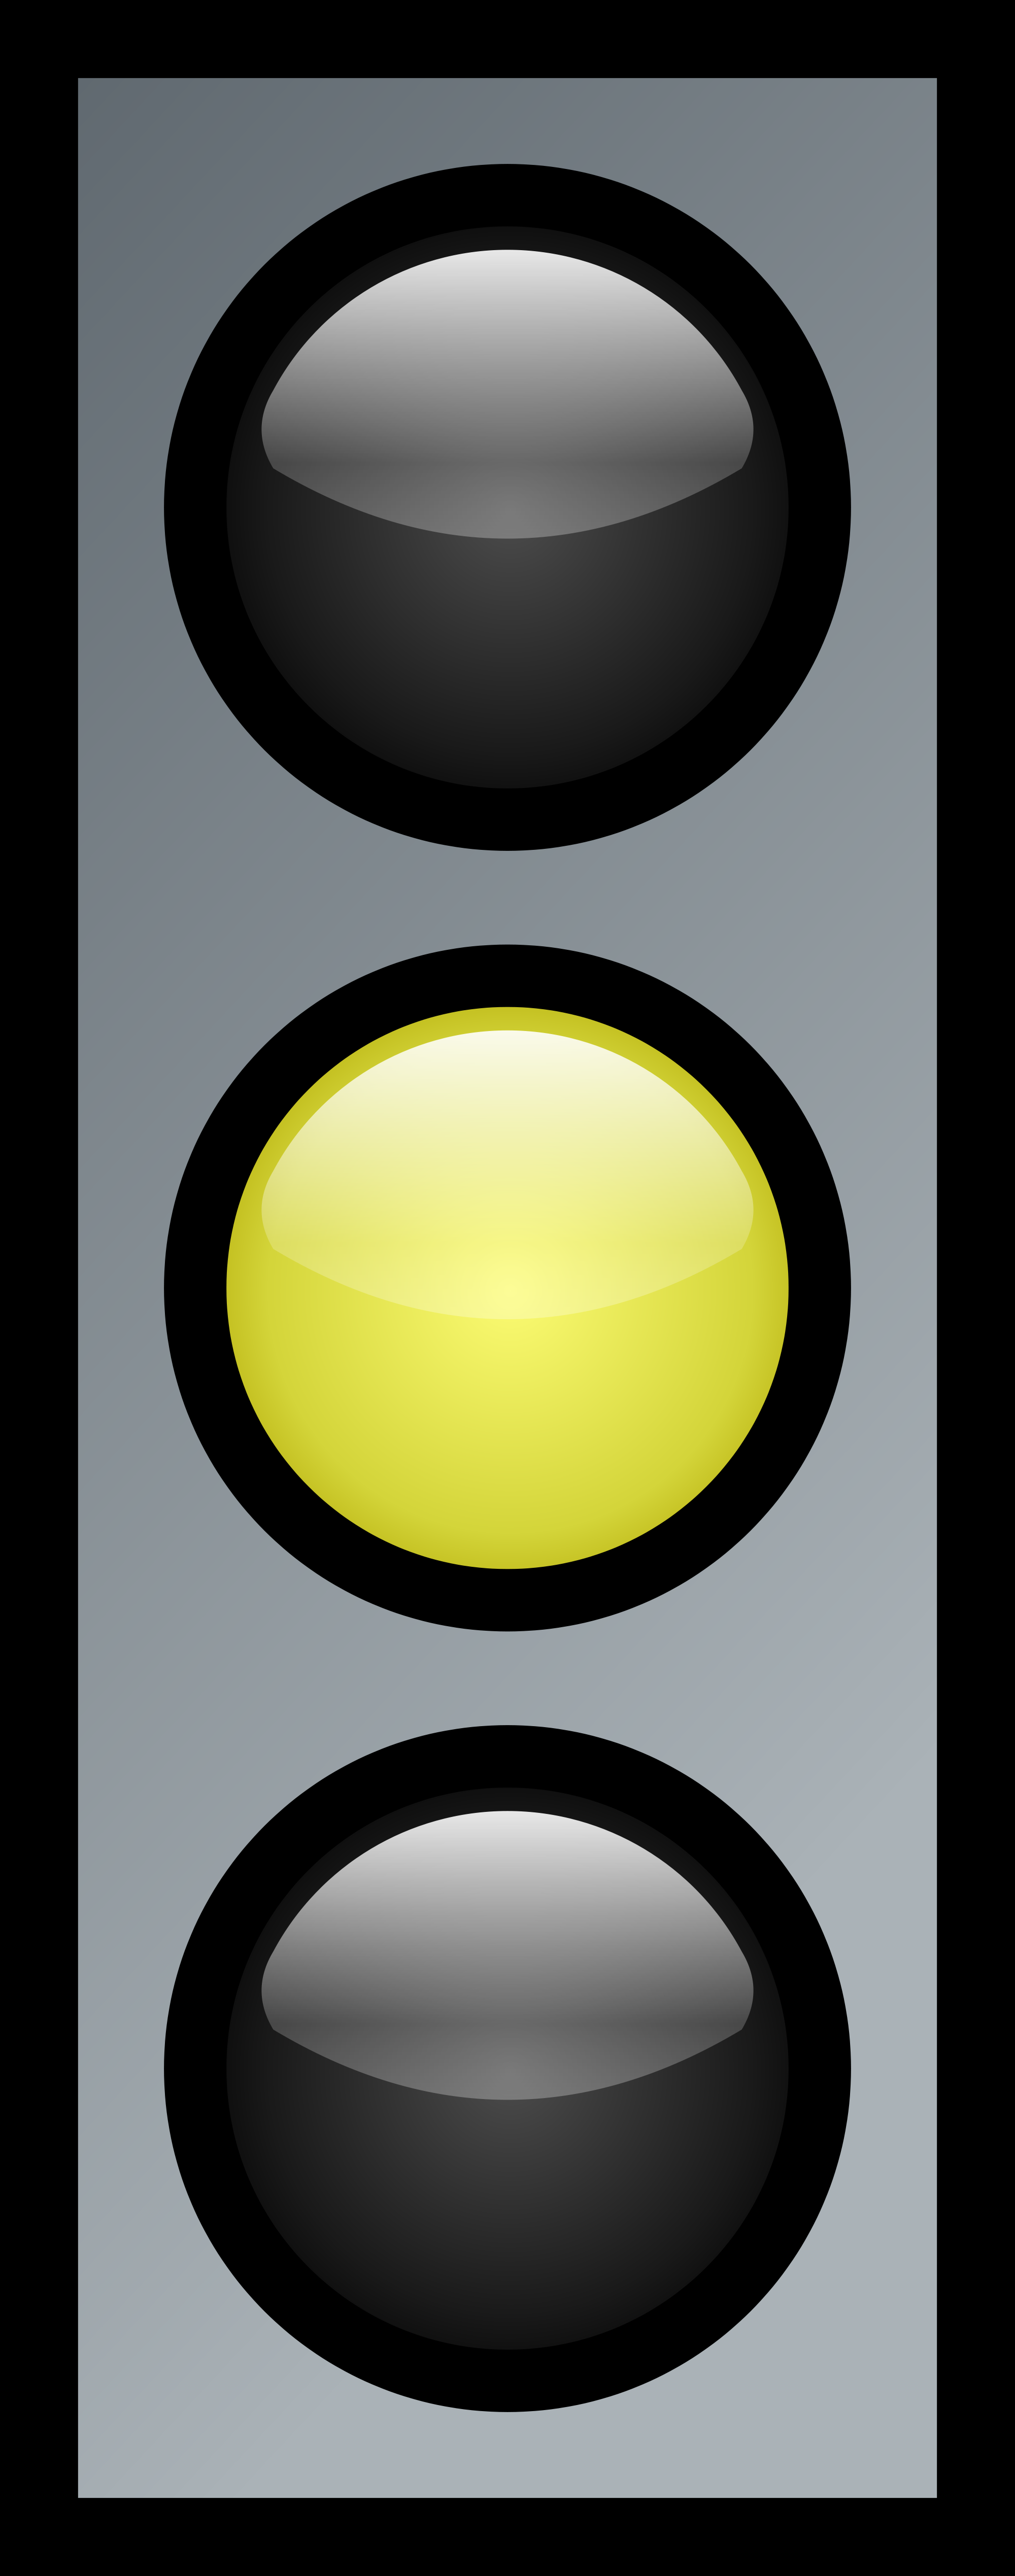 File:Traffic lights yellow.svg - Wikimedia Commons